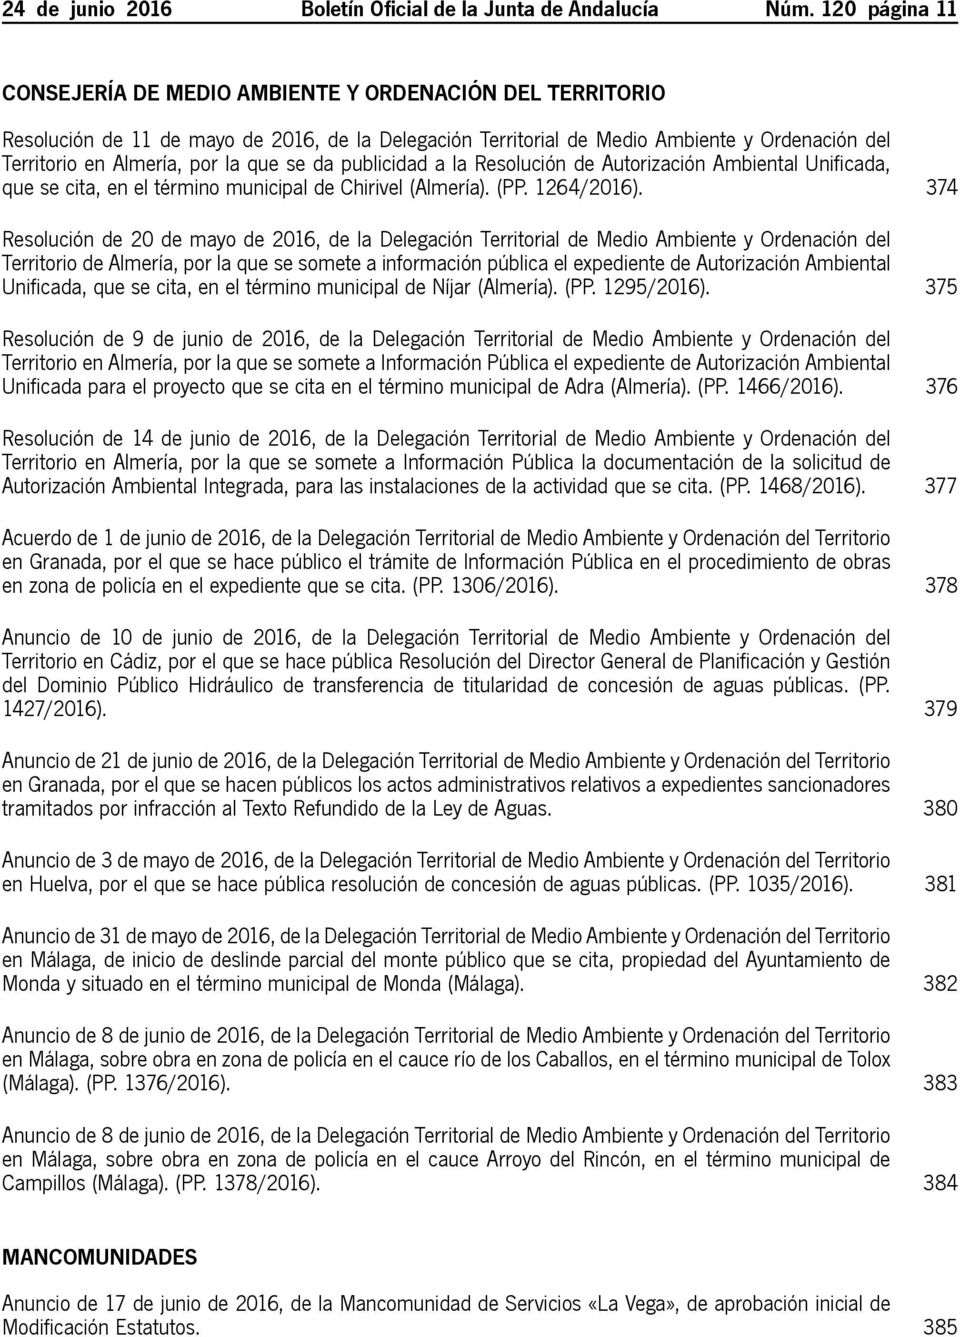 que se da publicidad a la Resolución de Autorización Ambiental Unificada, que se cita, en el término municipal de Chirivel (Almería). (PP. 1264/2016).